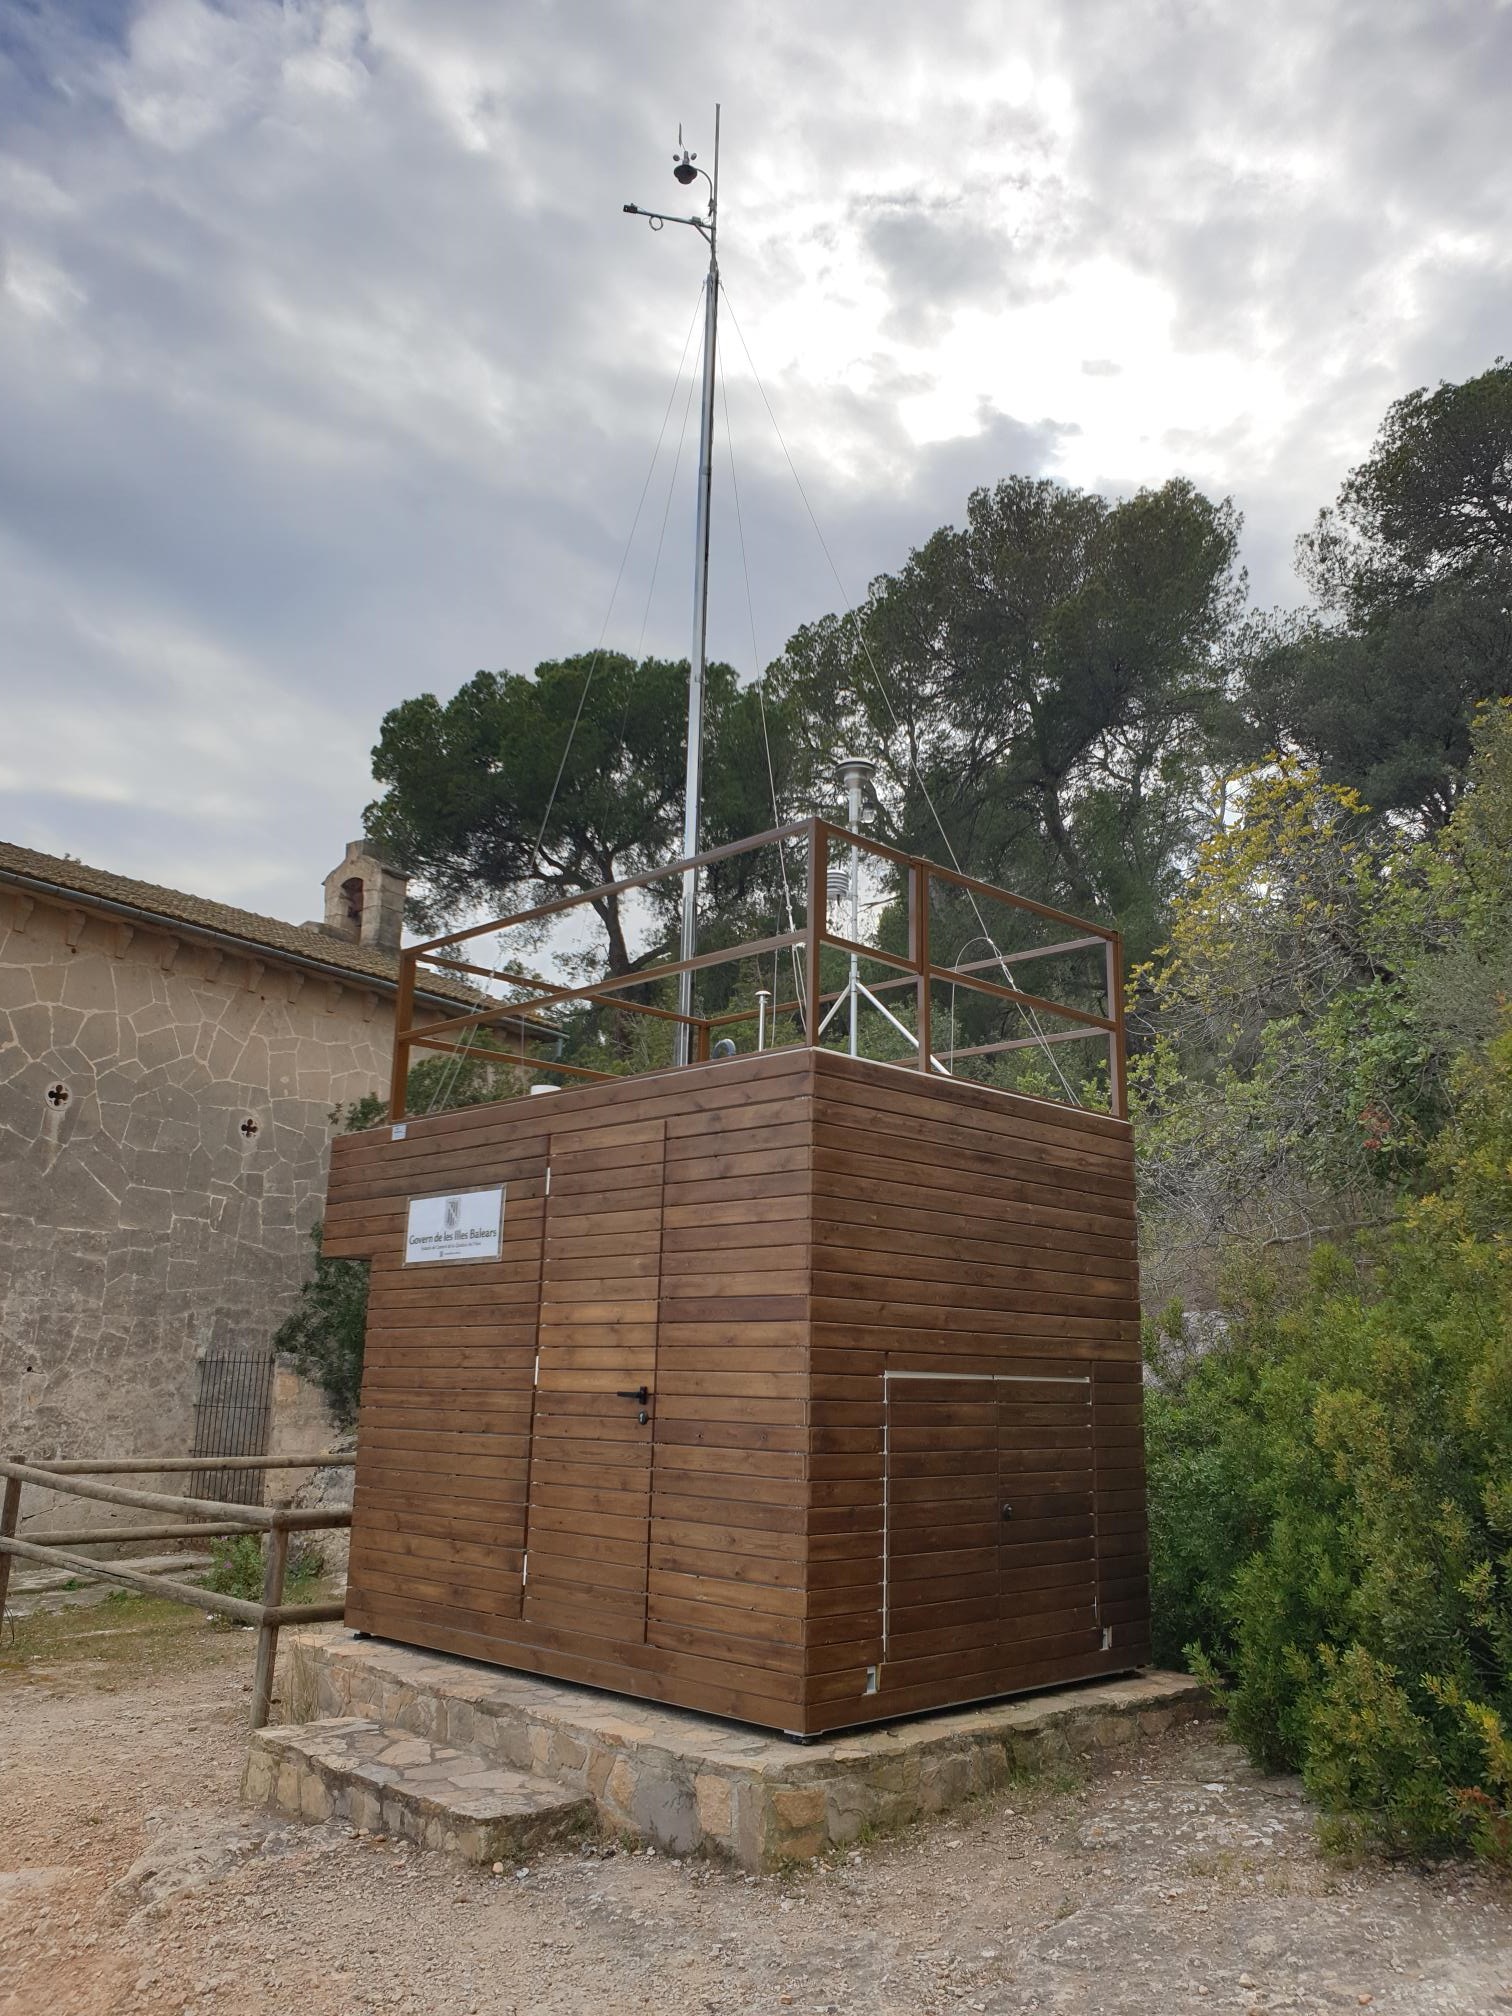 Estación de Parque de Bellver - Palma de Mallorca (Mallorca) - Red balear de vigilancia y control de la calidad del aire.